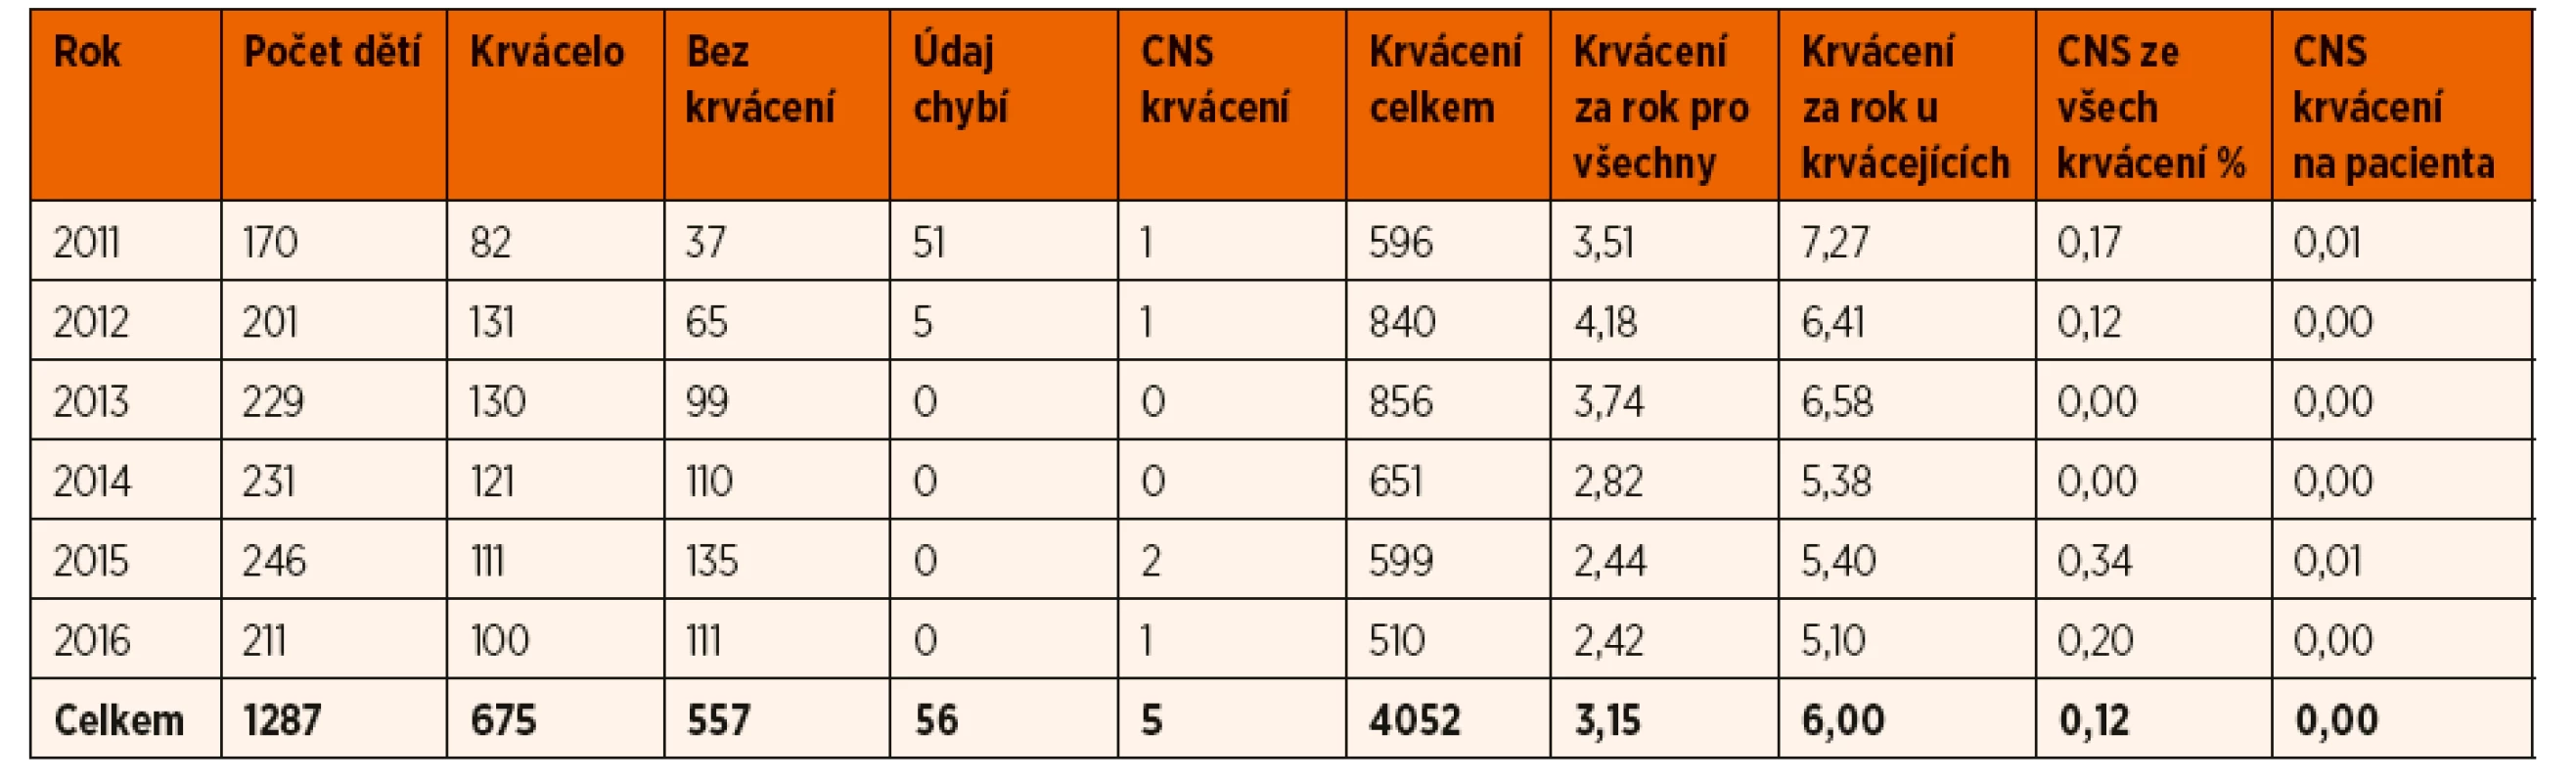 Údaje o pacientech v dětském věku (0–18 let) z registru ČNHP v letech 2011-2016.